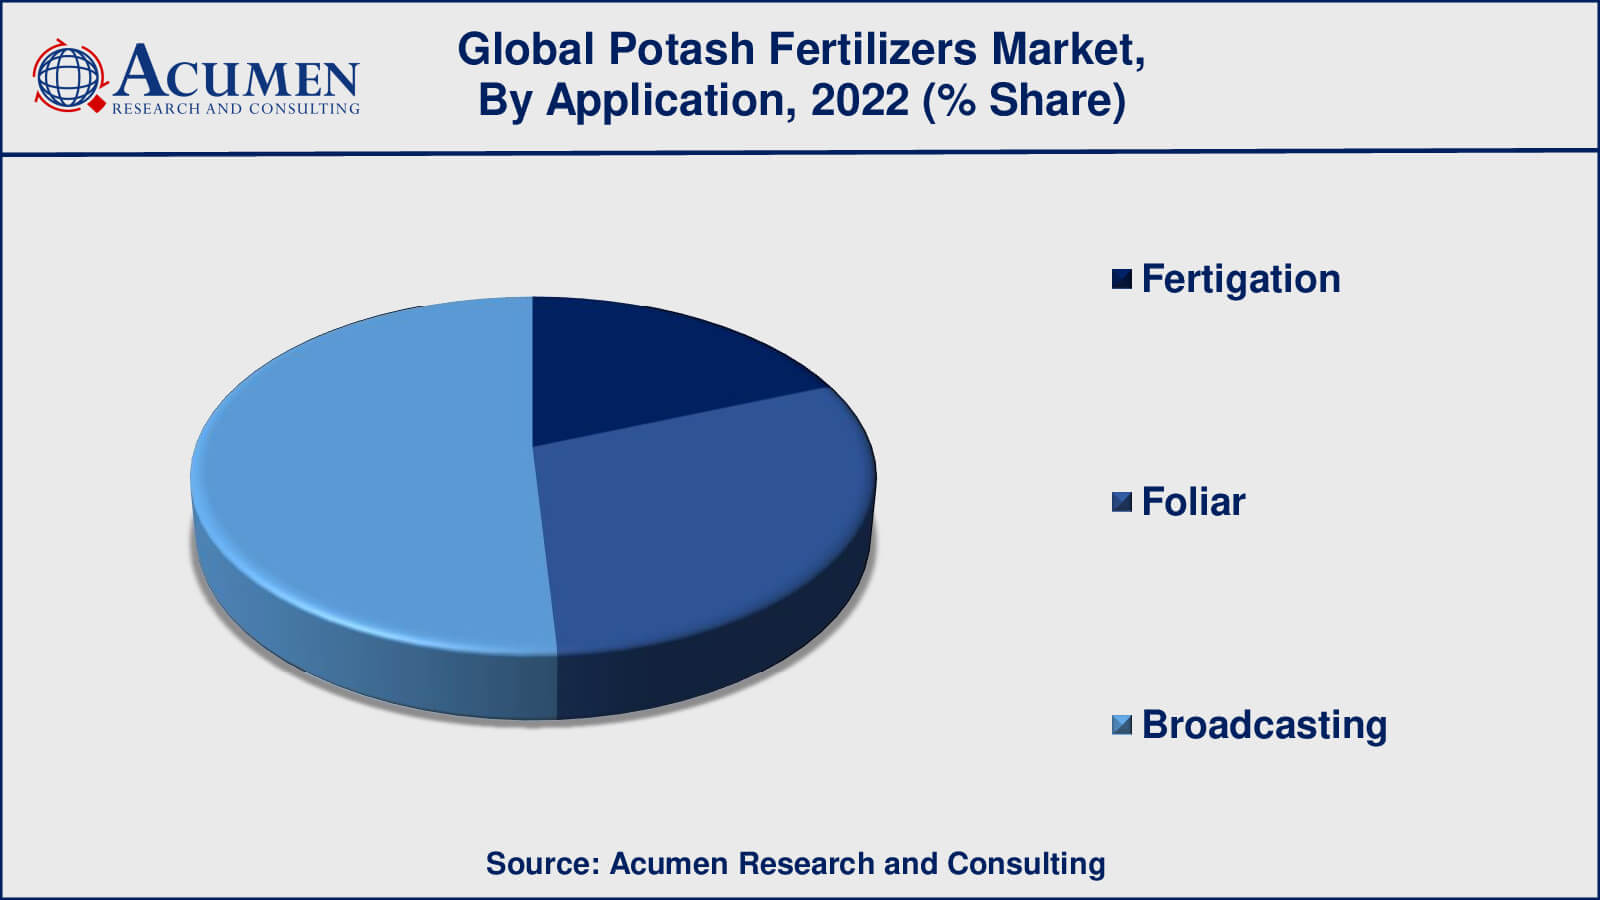 Potash Fertilizers Market Drivers